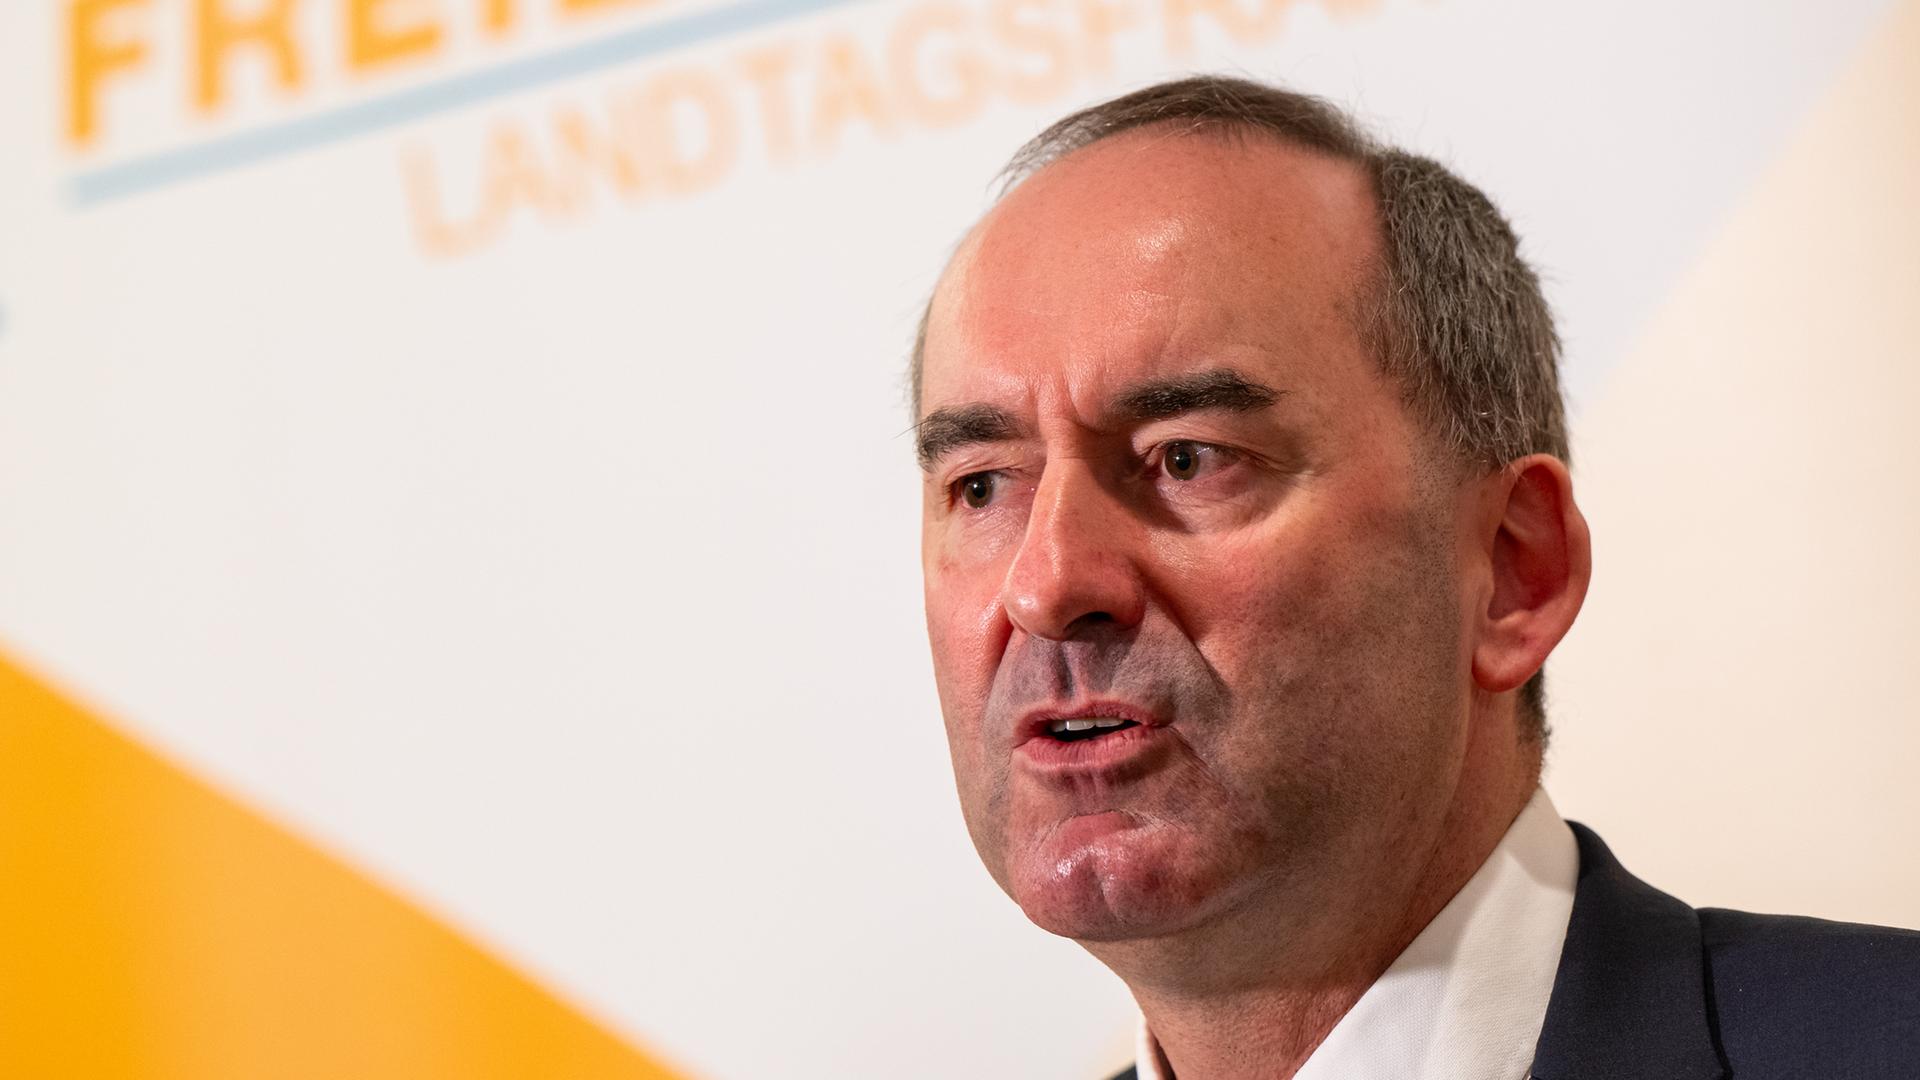 Hubert Aiwanger, bayerischer Staatsminister für Wirtschaft, Landesentwicklung und Energie, spricht auf einer Pressekonferenz nach einer Sitzung der Landtagsfraktion der Freien Wähler.